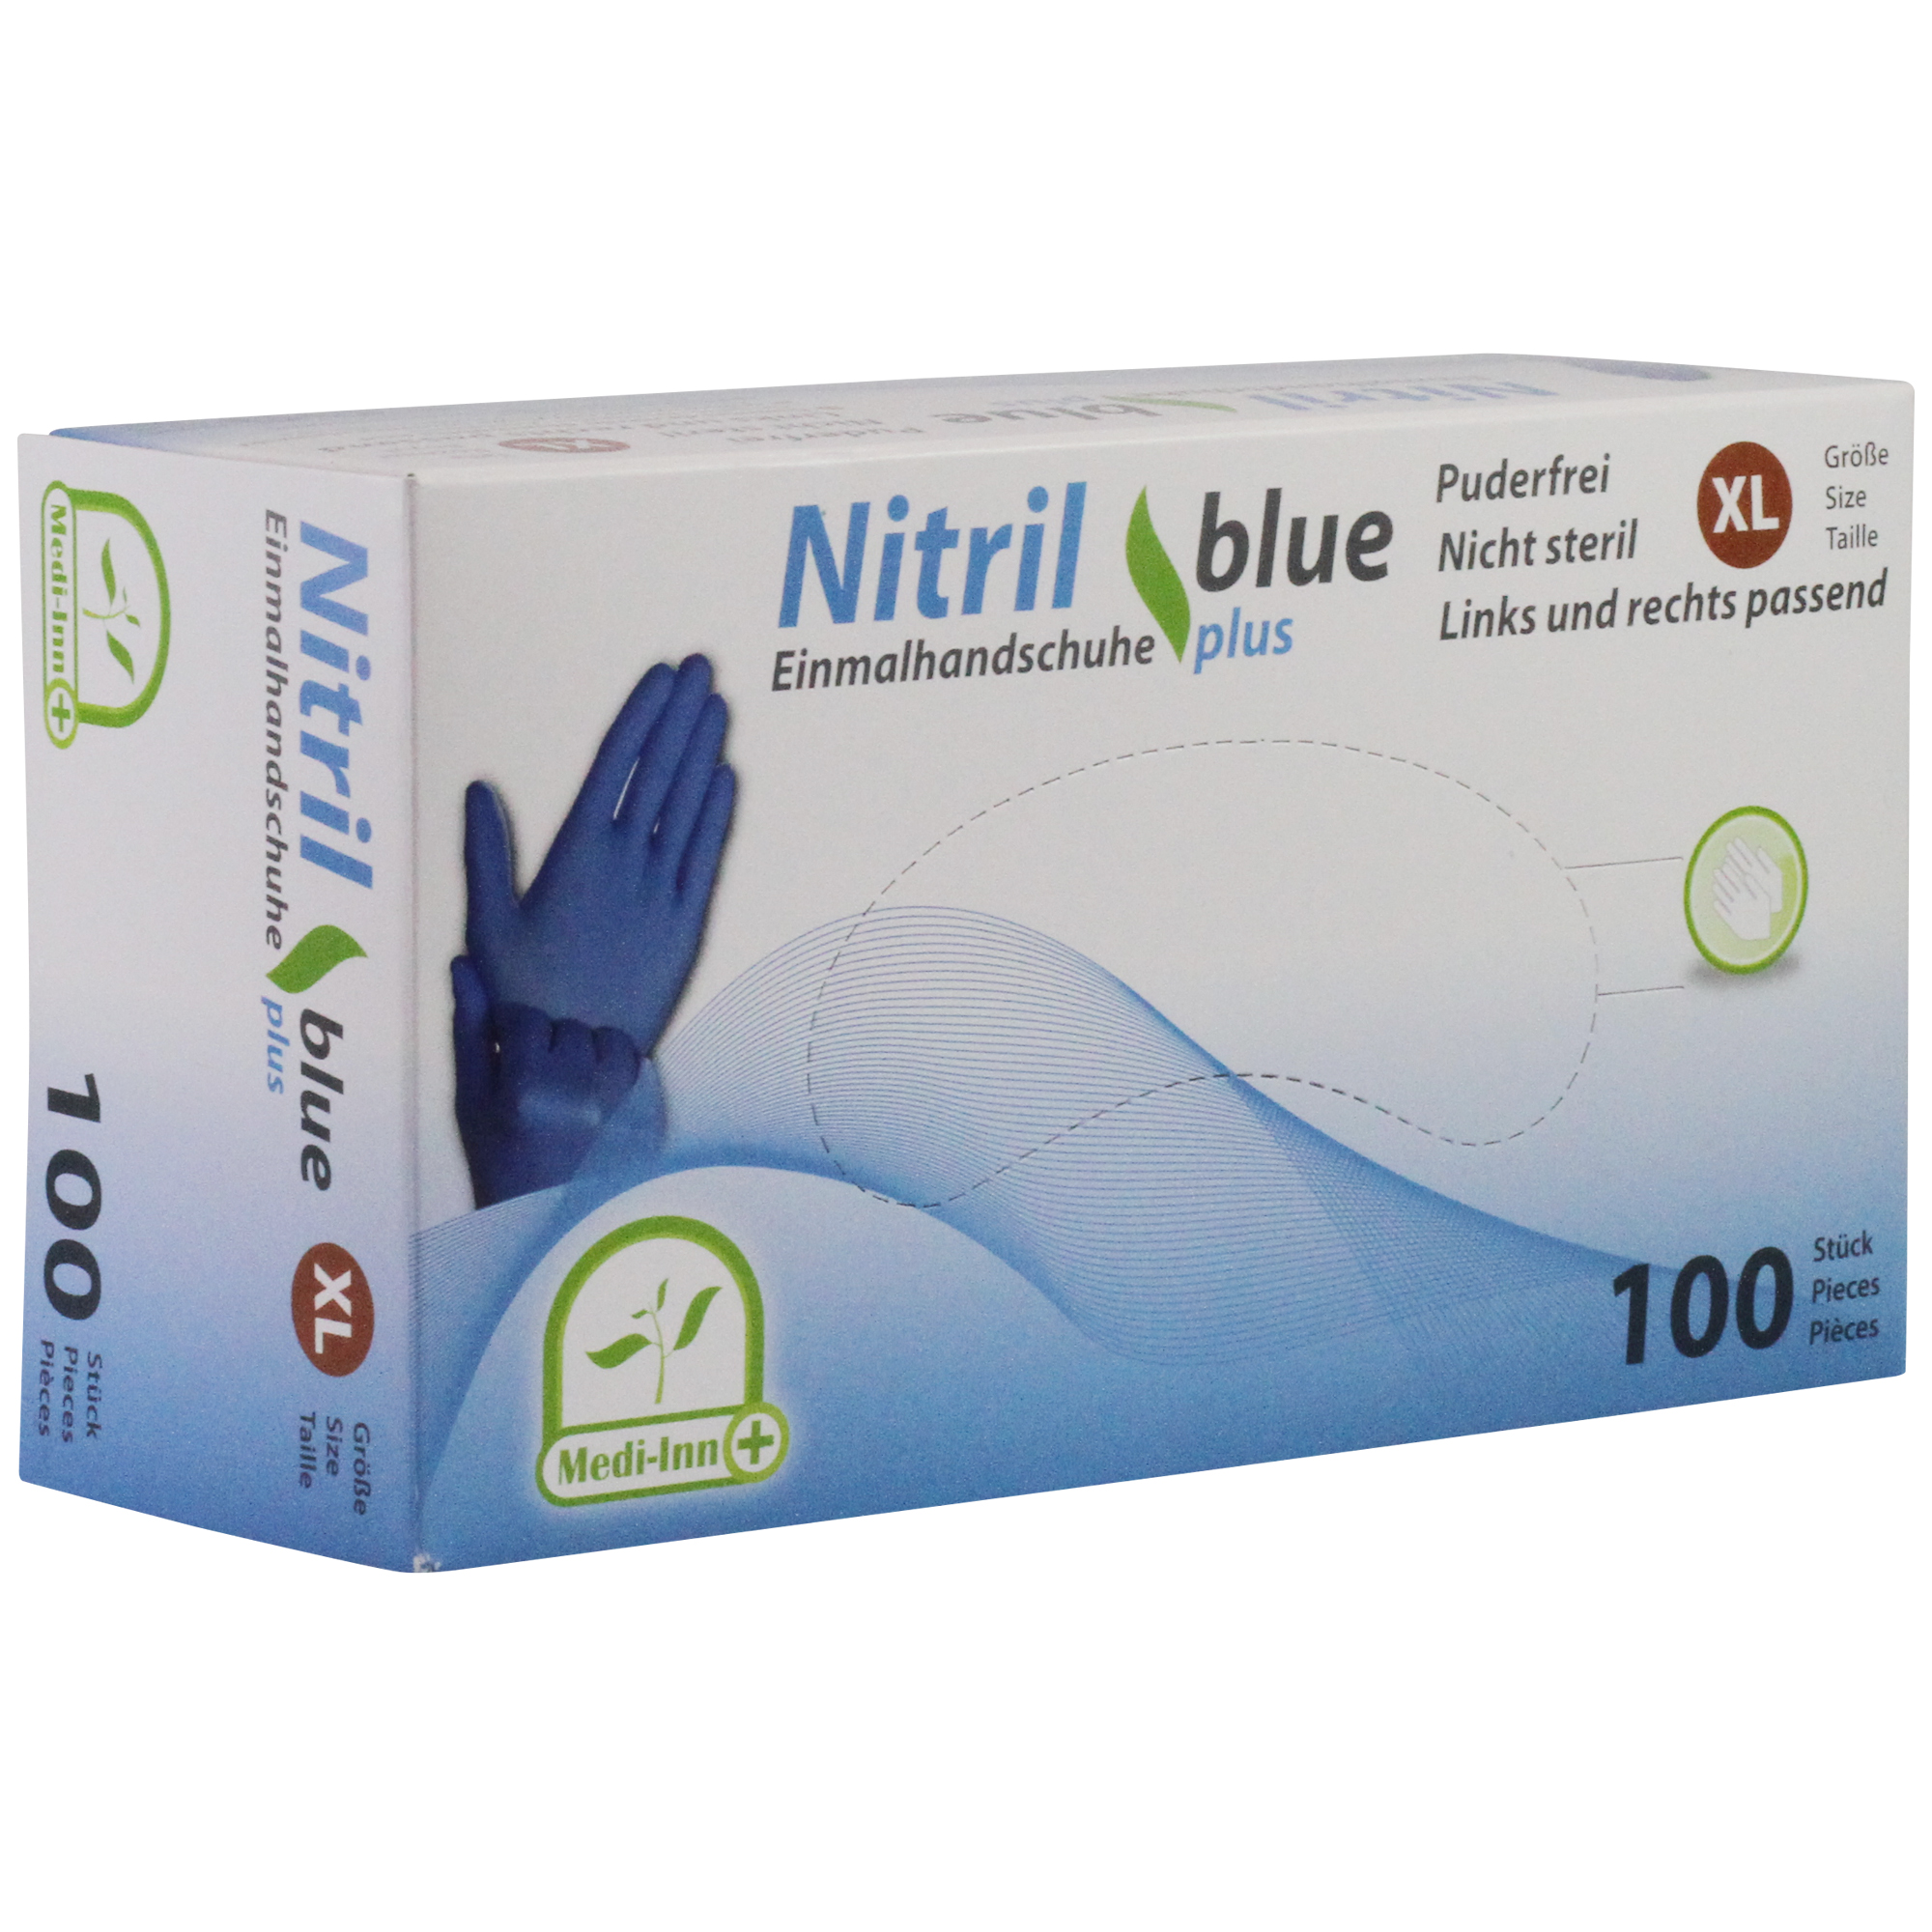 Medi-Inn Nitril Einmalhandschuhe blue plus